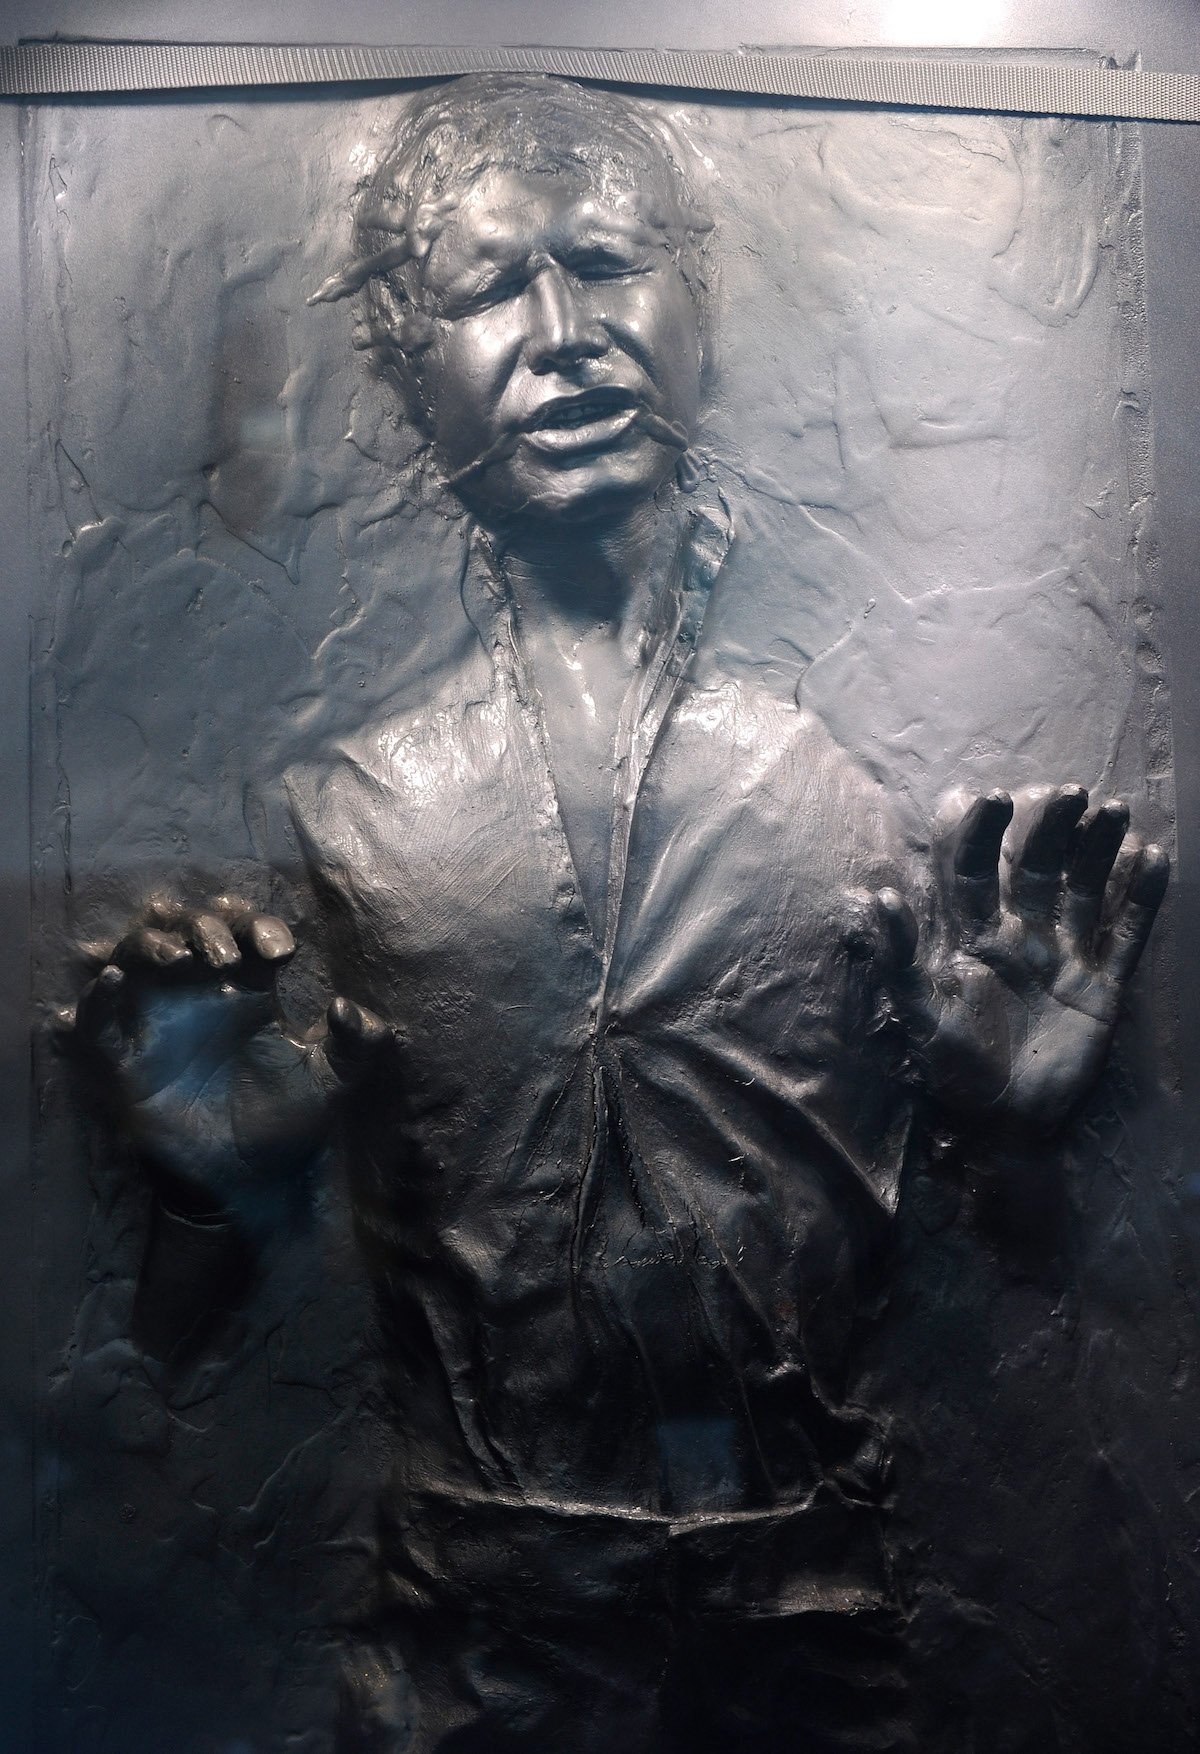 2010年，在“星球大战:音乐会”的博物馆展览中，演员哈里森·福特饰演的汉·索罗的《星球大战》道具被冻结在碳酸盐中